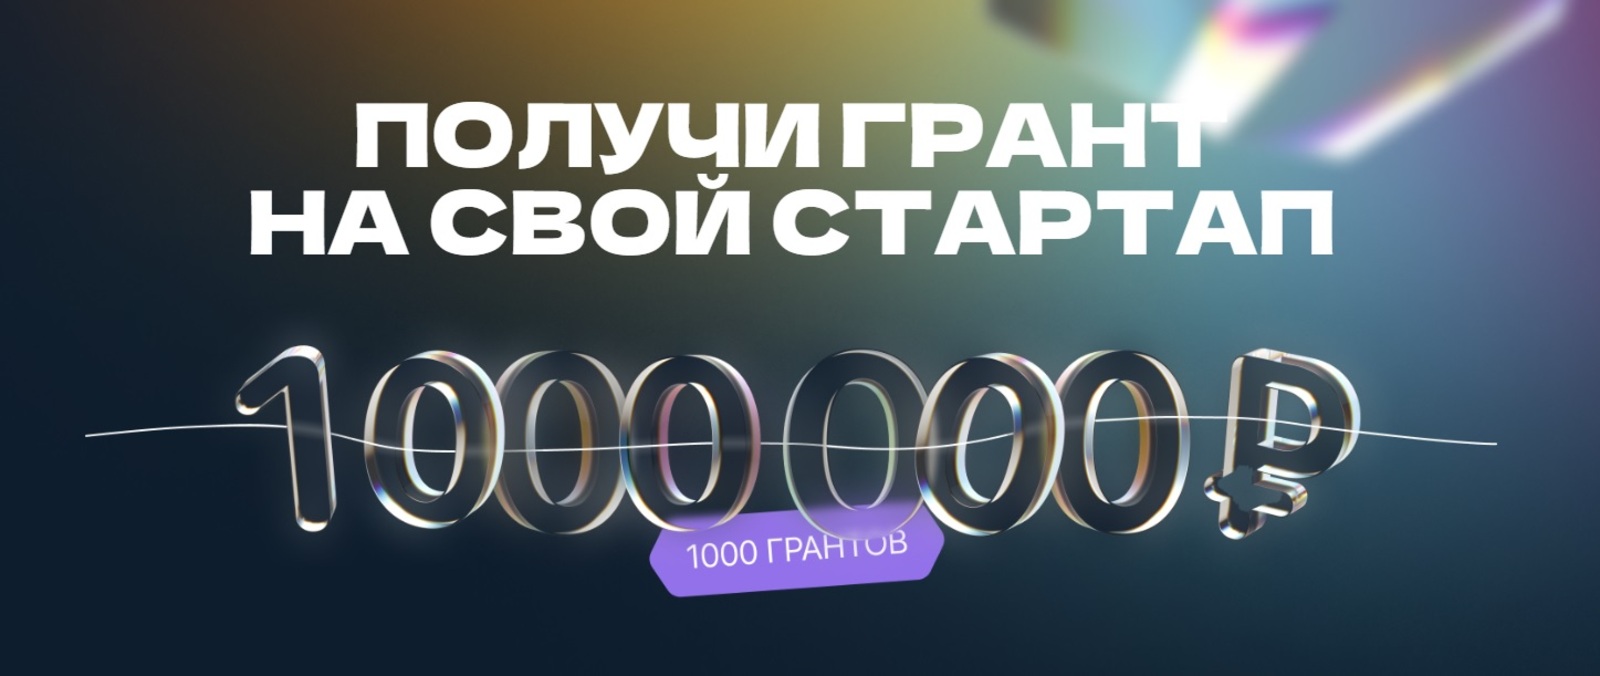 Студенты Башкирии могут получить 1 млн рублей на развитие своего стартапа